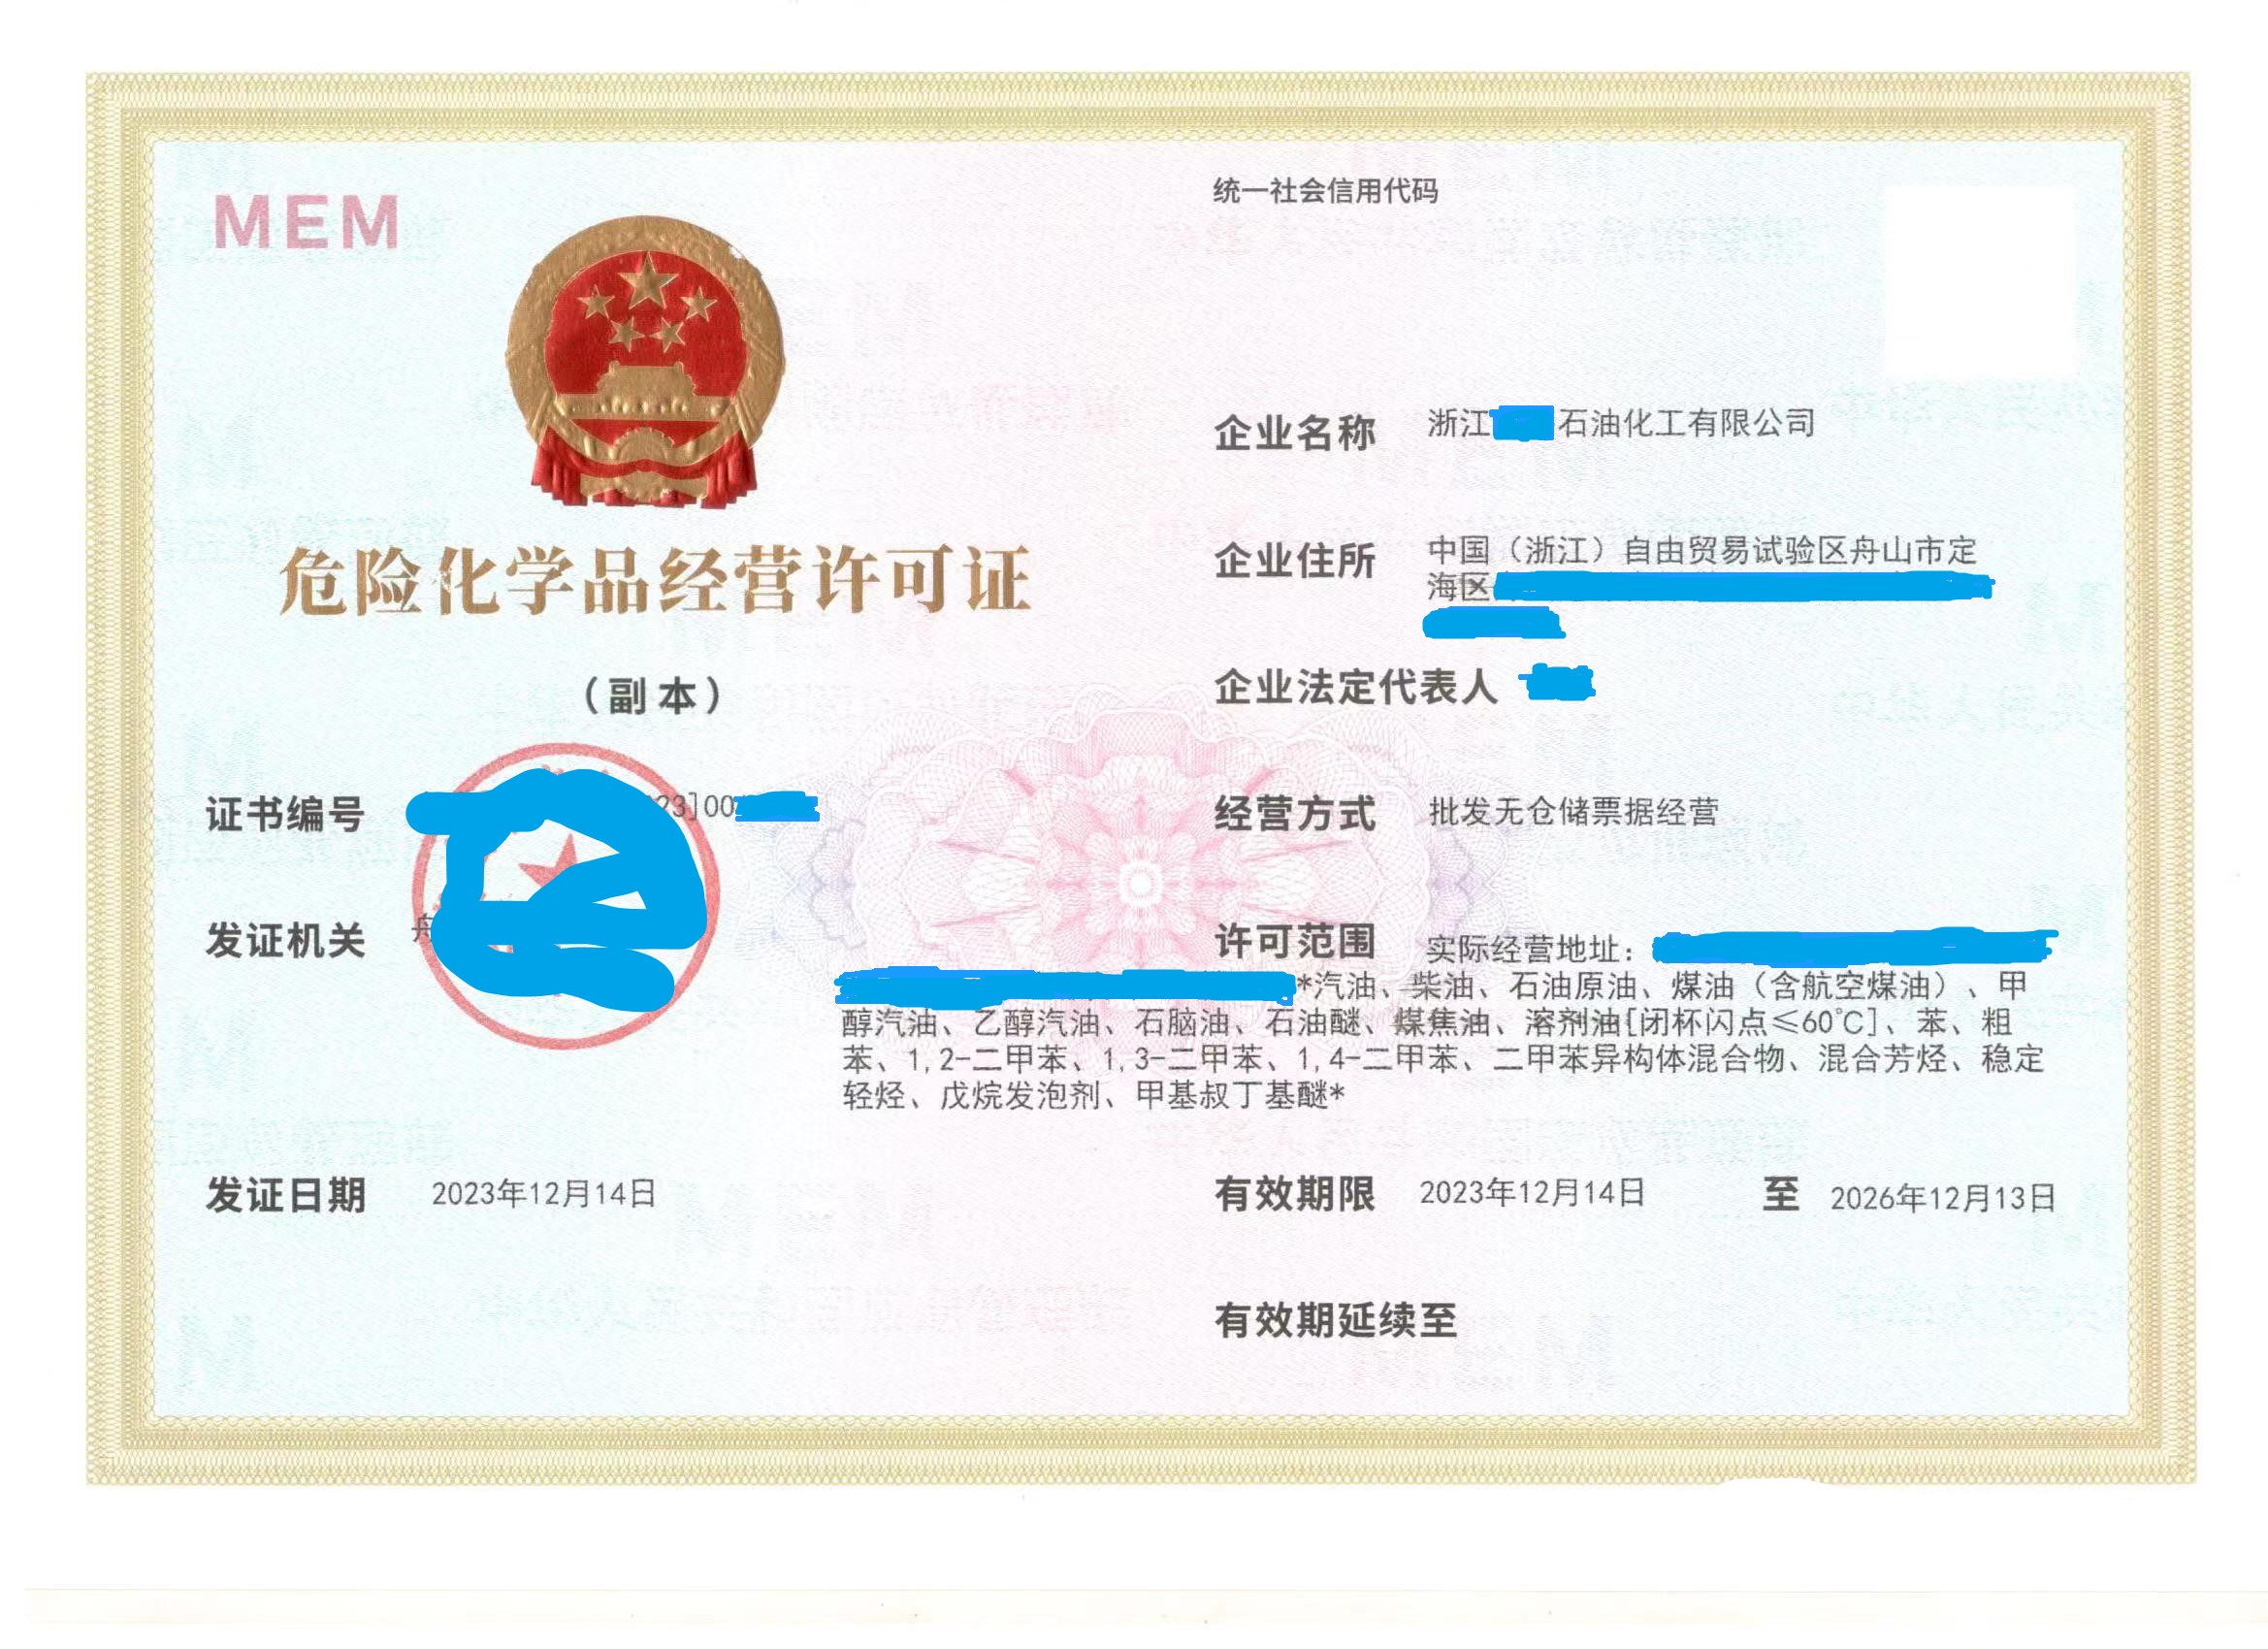 嘉兴舟山营业执照申请流程 注册公司需要多长时间